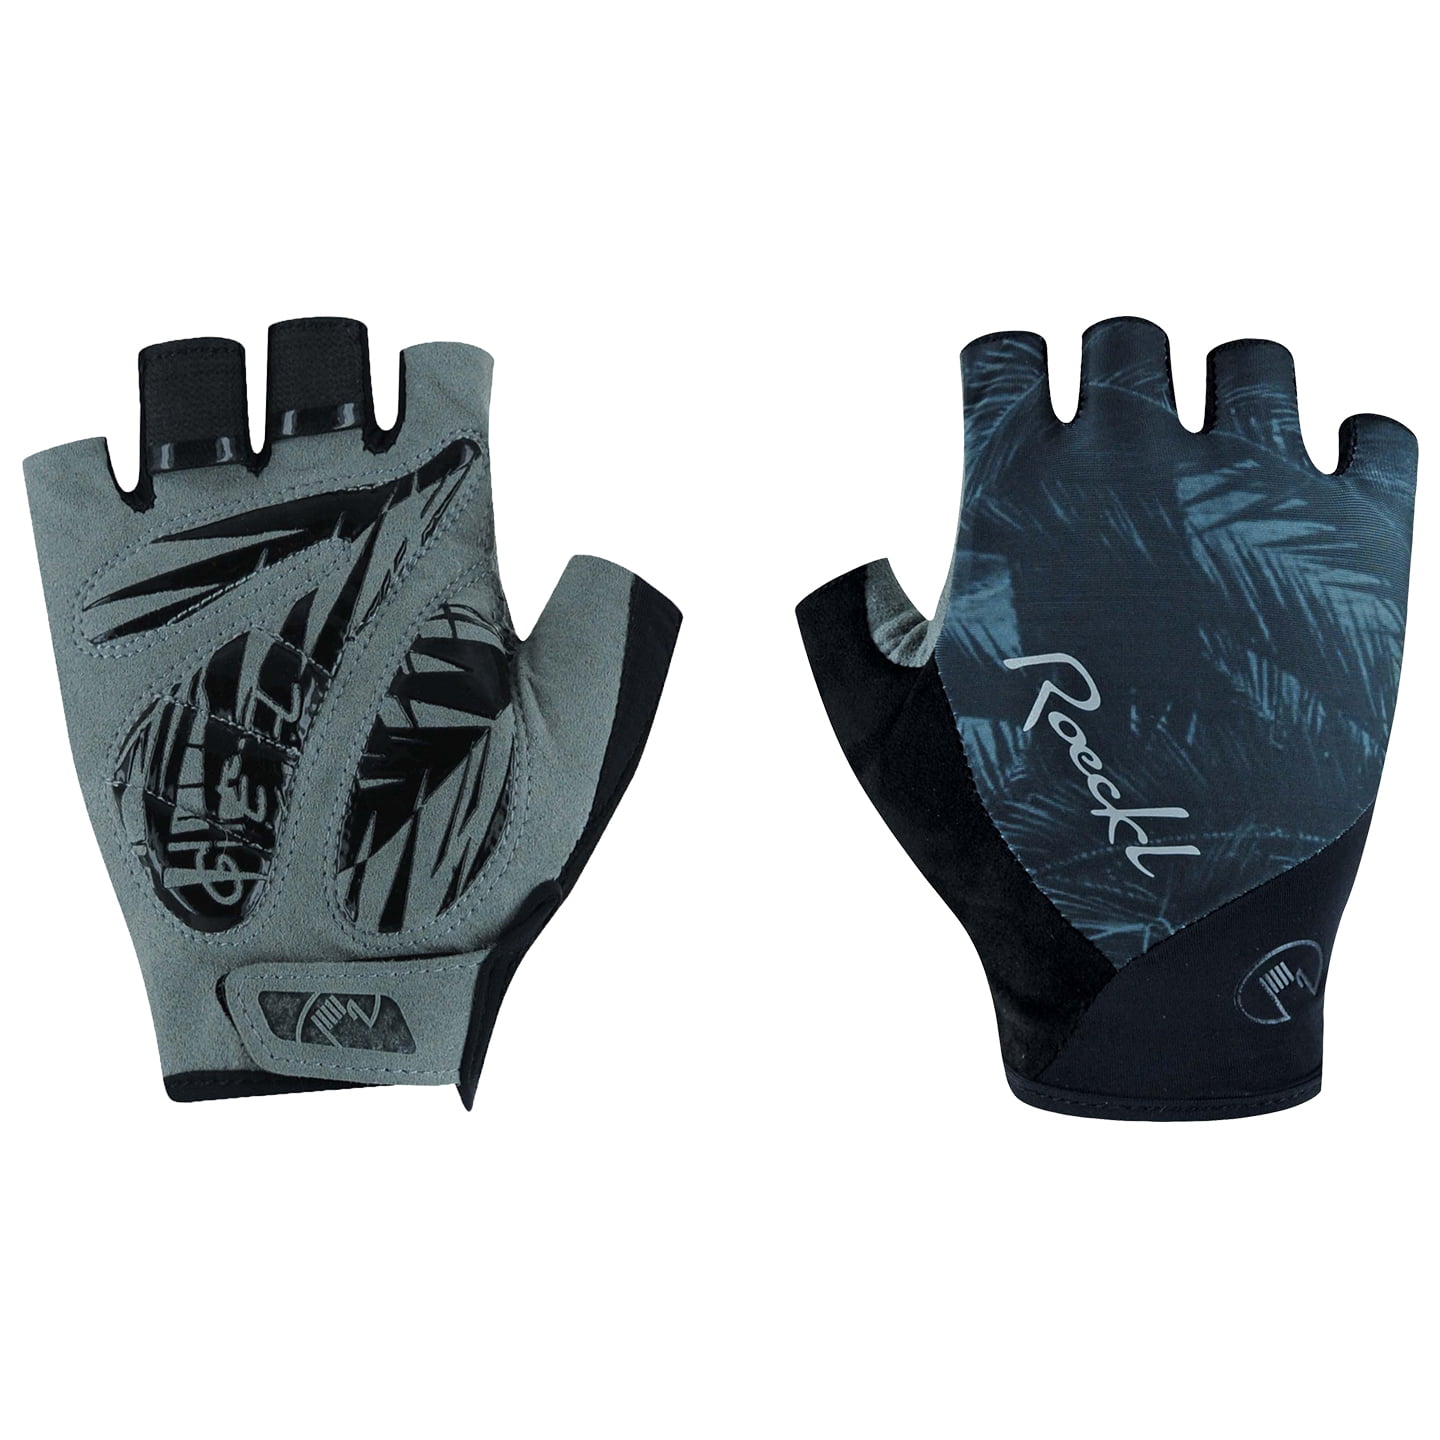 ROECKL Danis Women’s Gloves Women’s Cycling Gloves, size 7,5, Cycling gloves, Cycle clothing